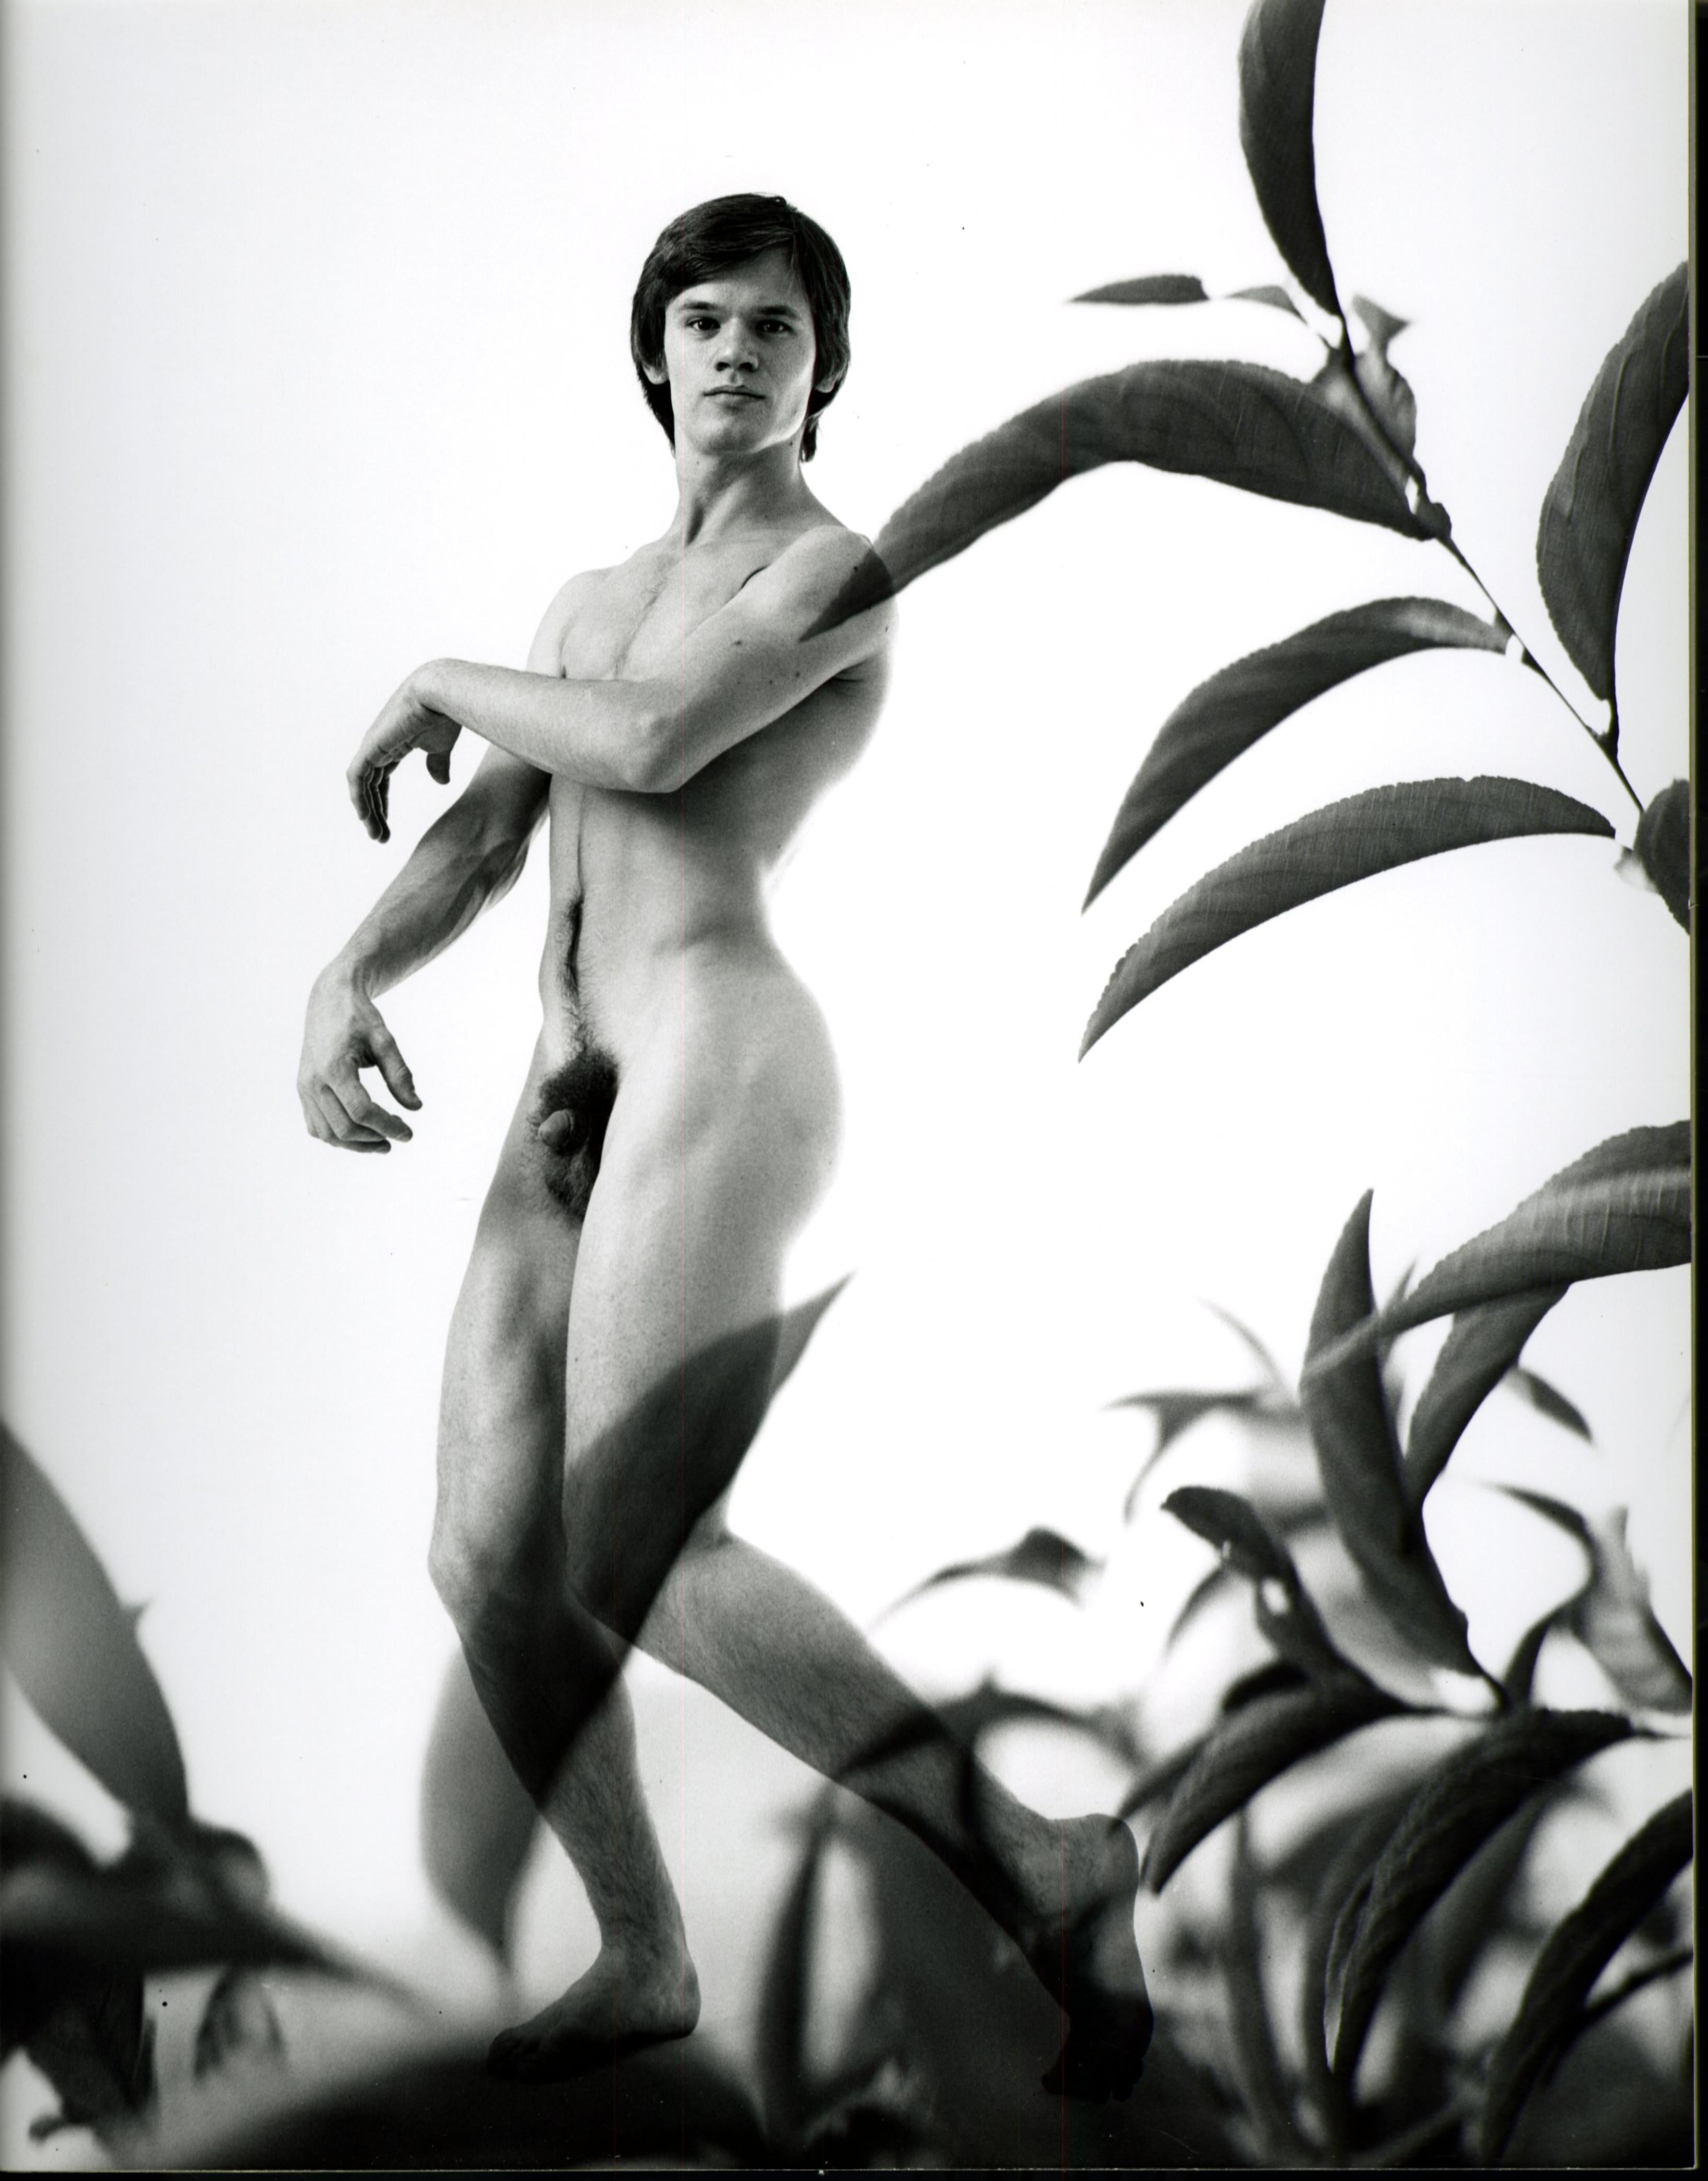 Männliches Aktmodell mit mehreren exposures und Pflanzenblättern, signiert von Jack Mitchell